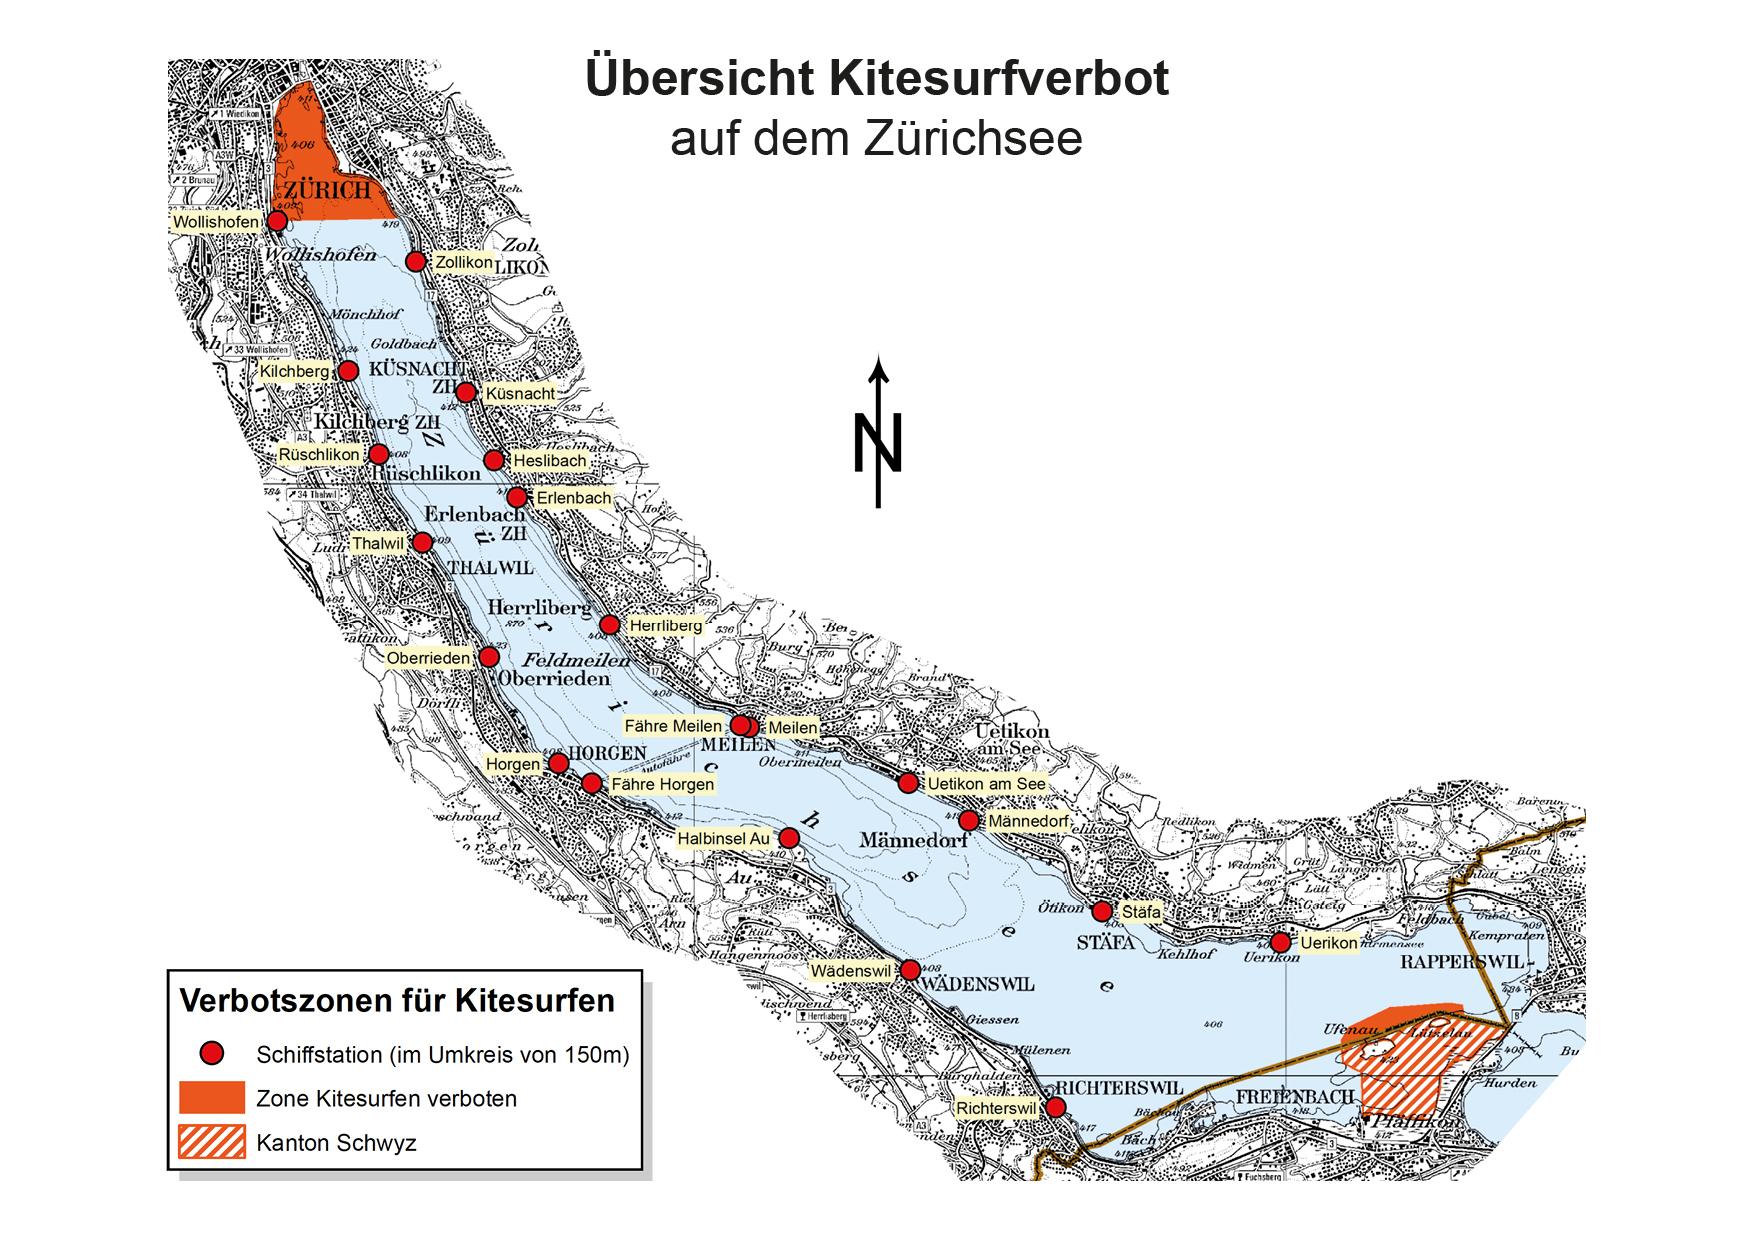 Diese Übersichtskarte zeigt den Zürichsee mit den beiden Kitesurfverbotszonen im Seebecken von Zürich und auf dem Gebiet des Kantons Schwyz.